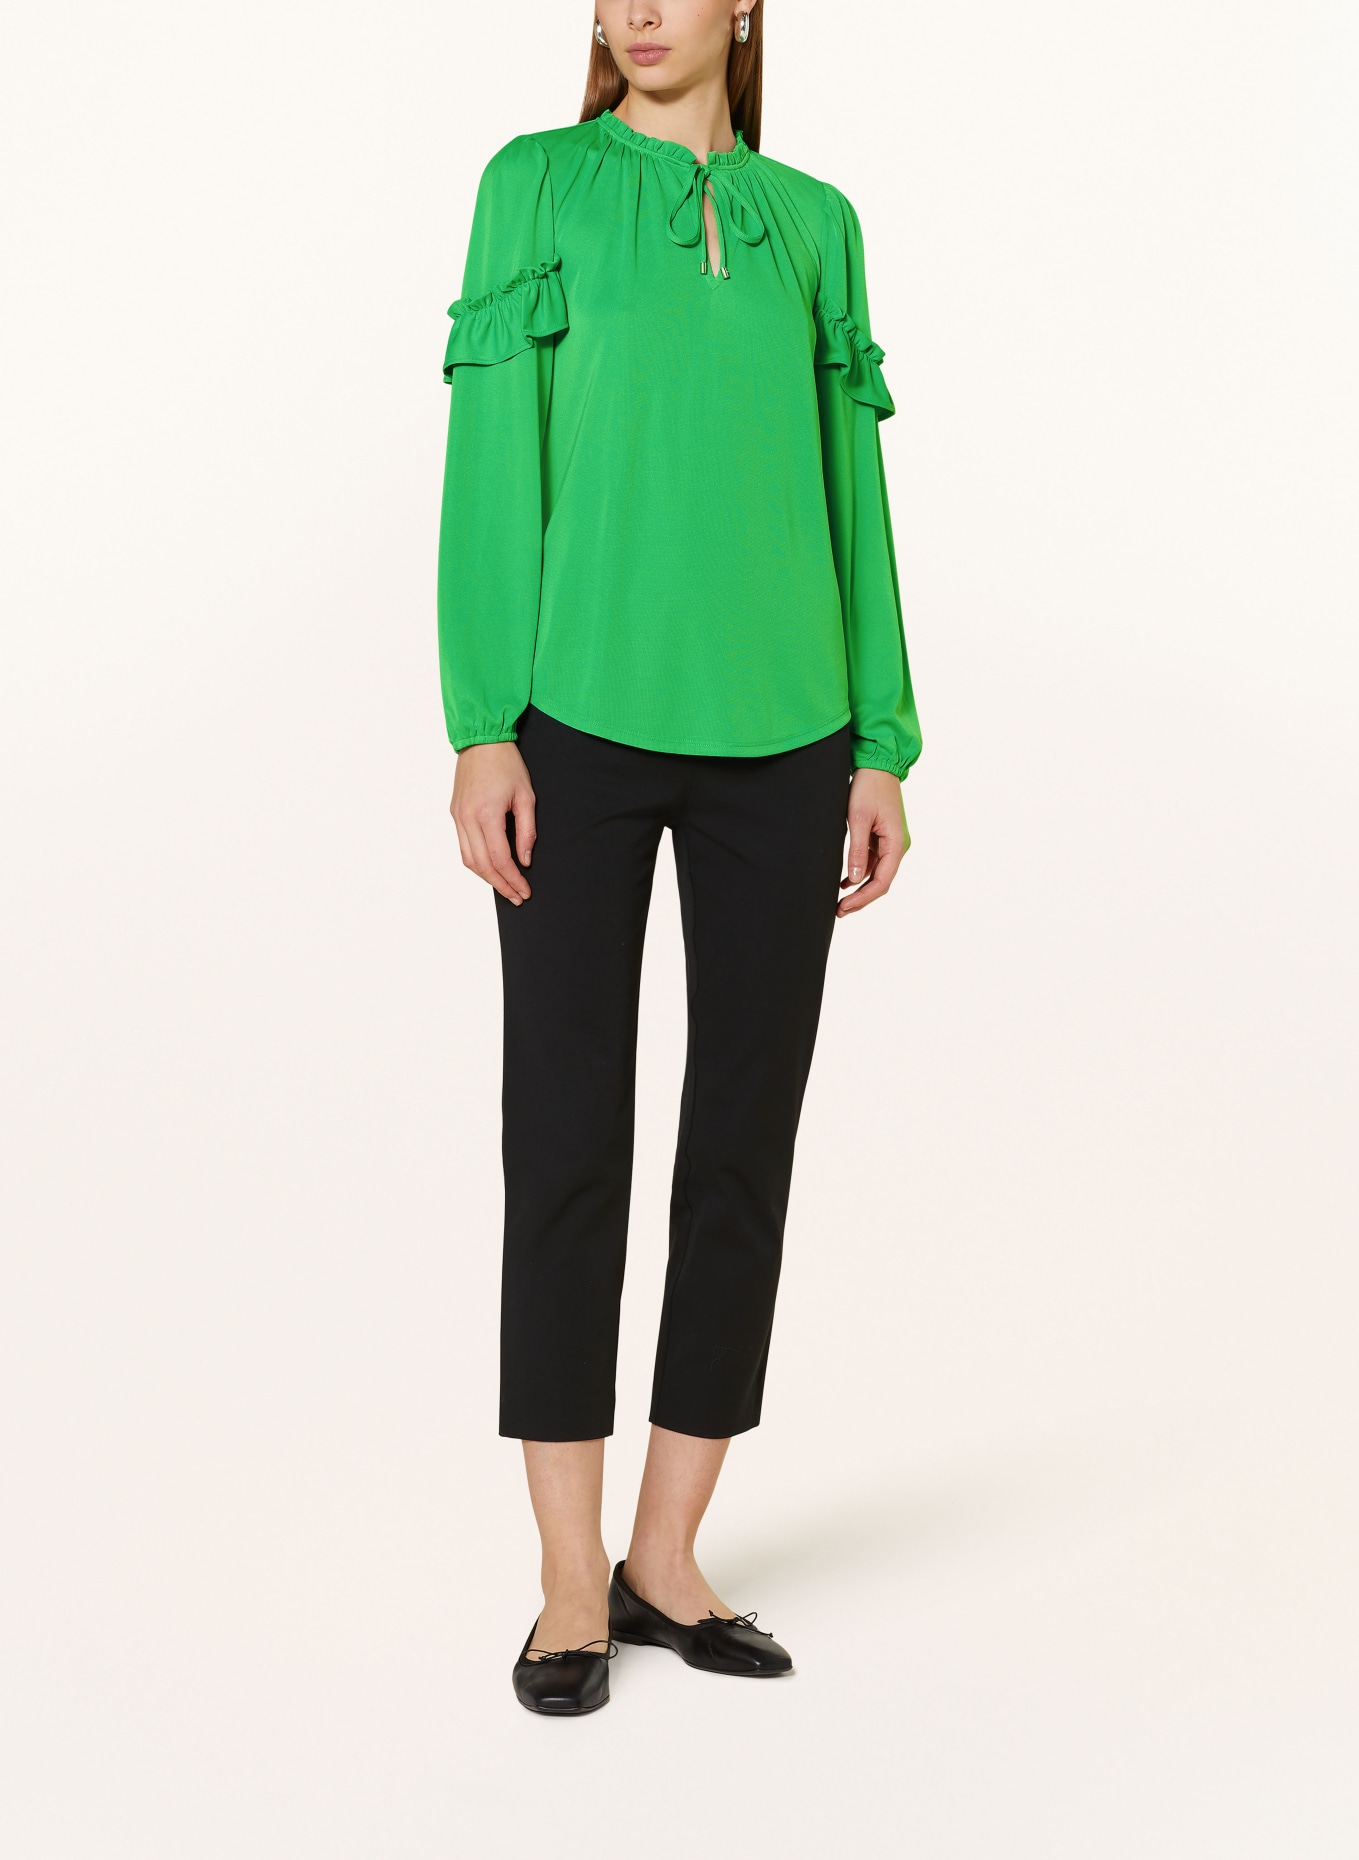 LAUREN RALPH LAUREN Shirt blouse in jersey with ruffles, Color: NEON GREEN (Image 2)